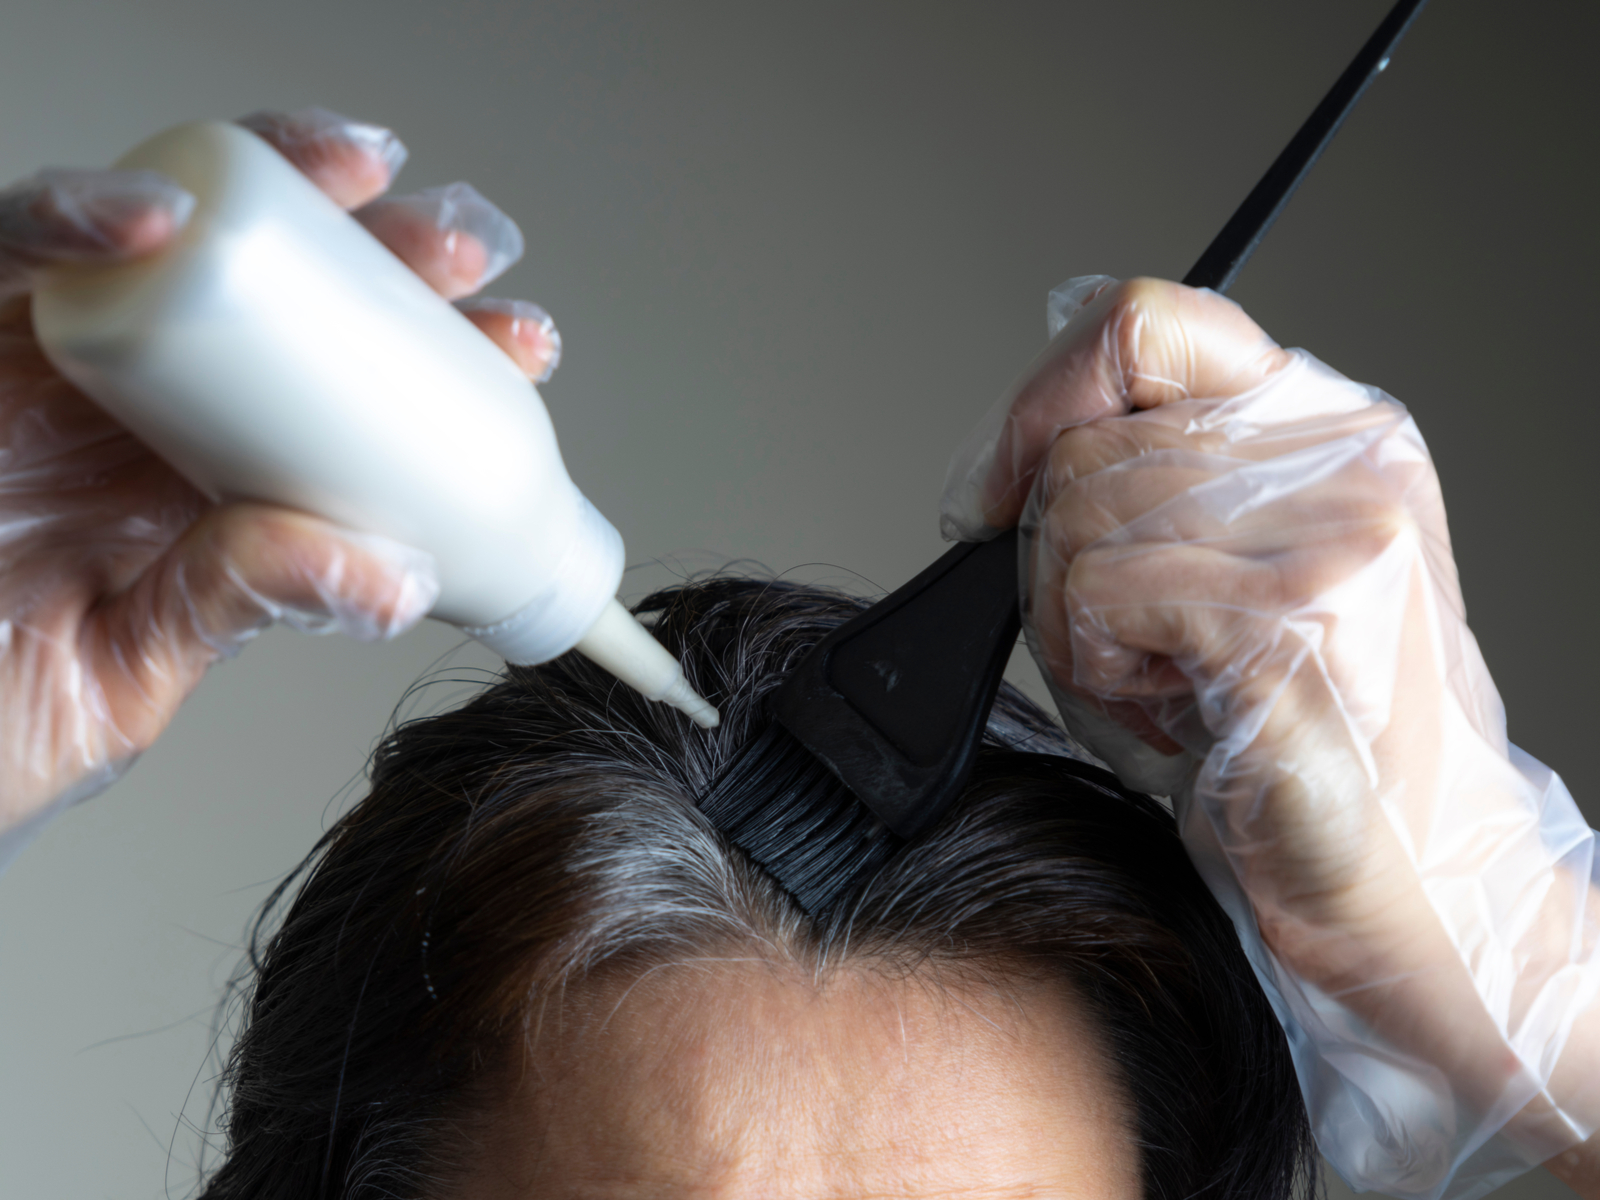 Hình ảnh cho một mẩu có tiêu đề thời gian để lại thuốc nhuộm trên tóc cho thấy một người phụ nữ đang nhuộm tóc